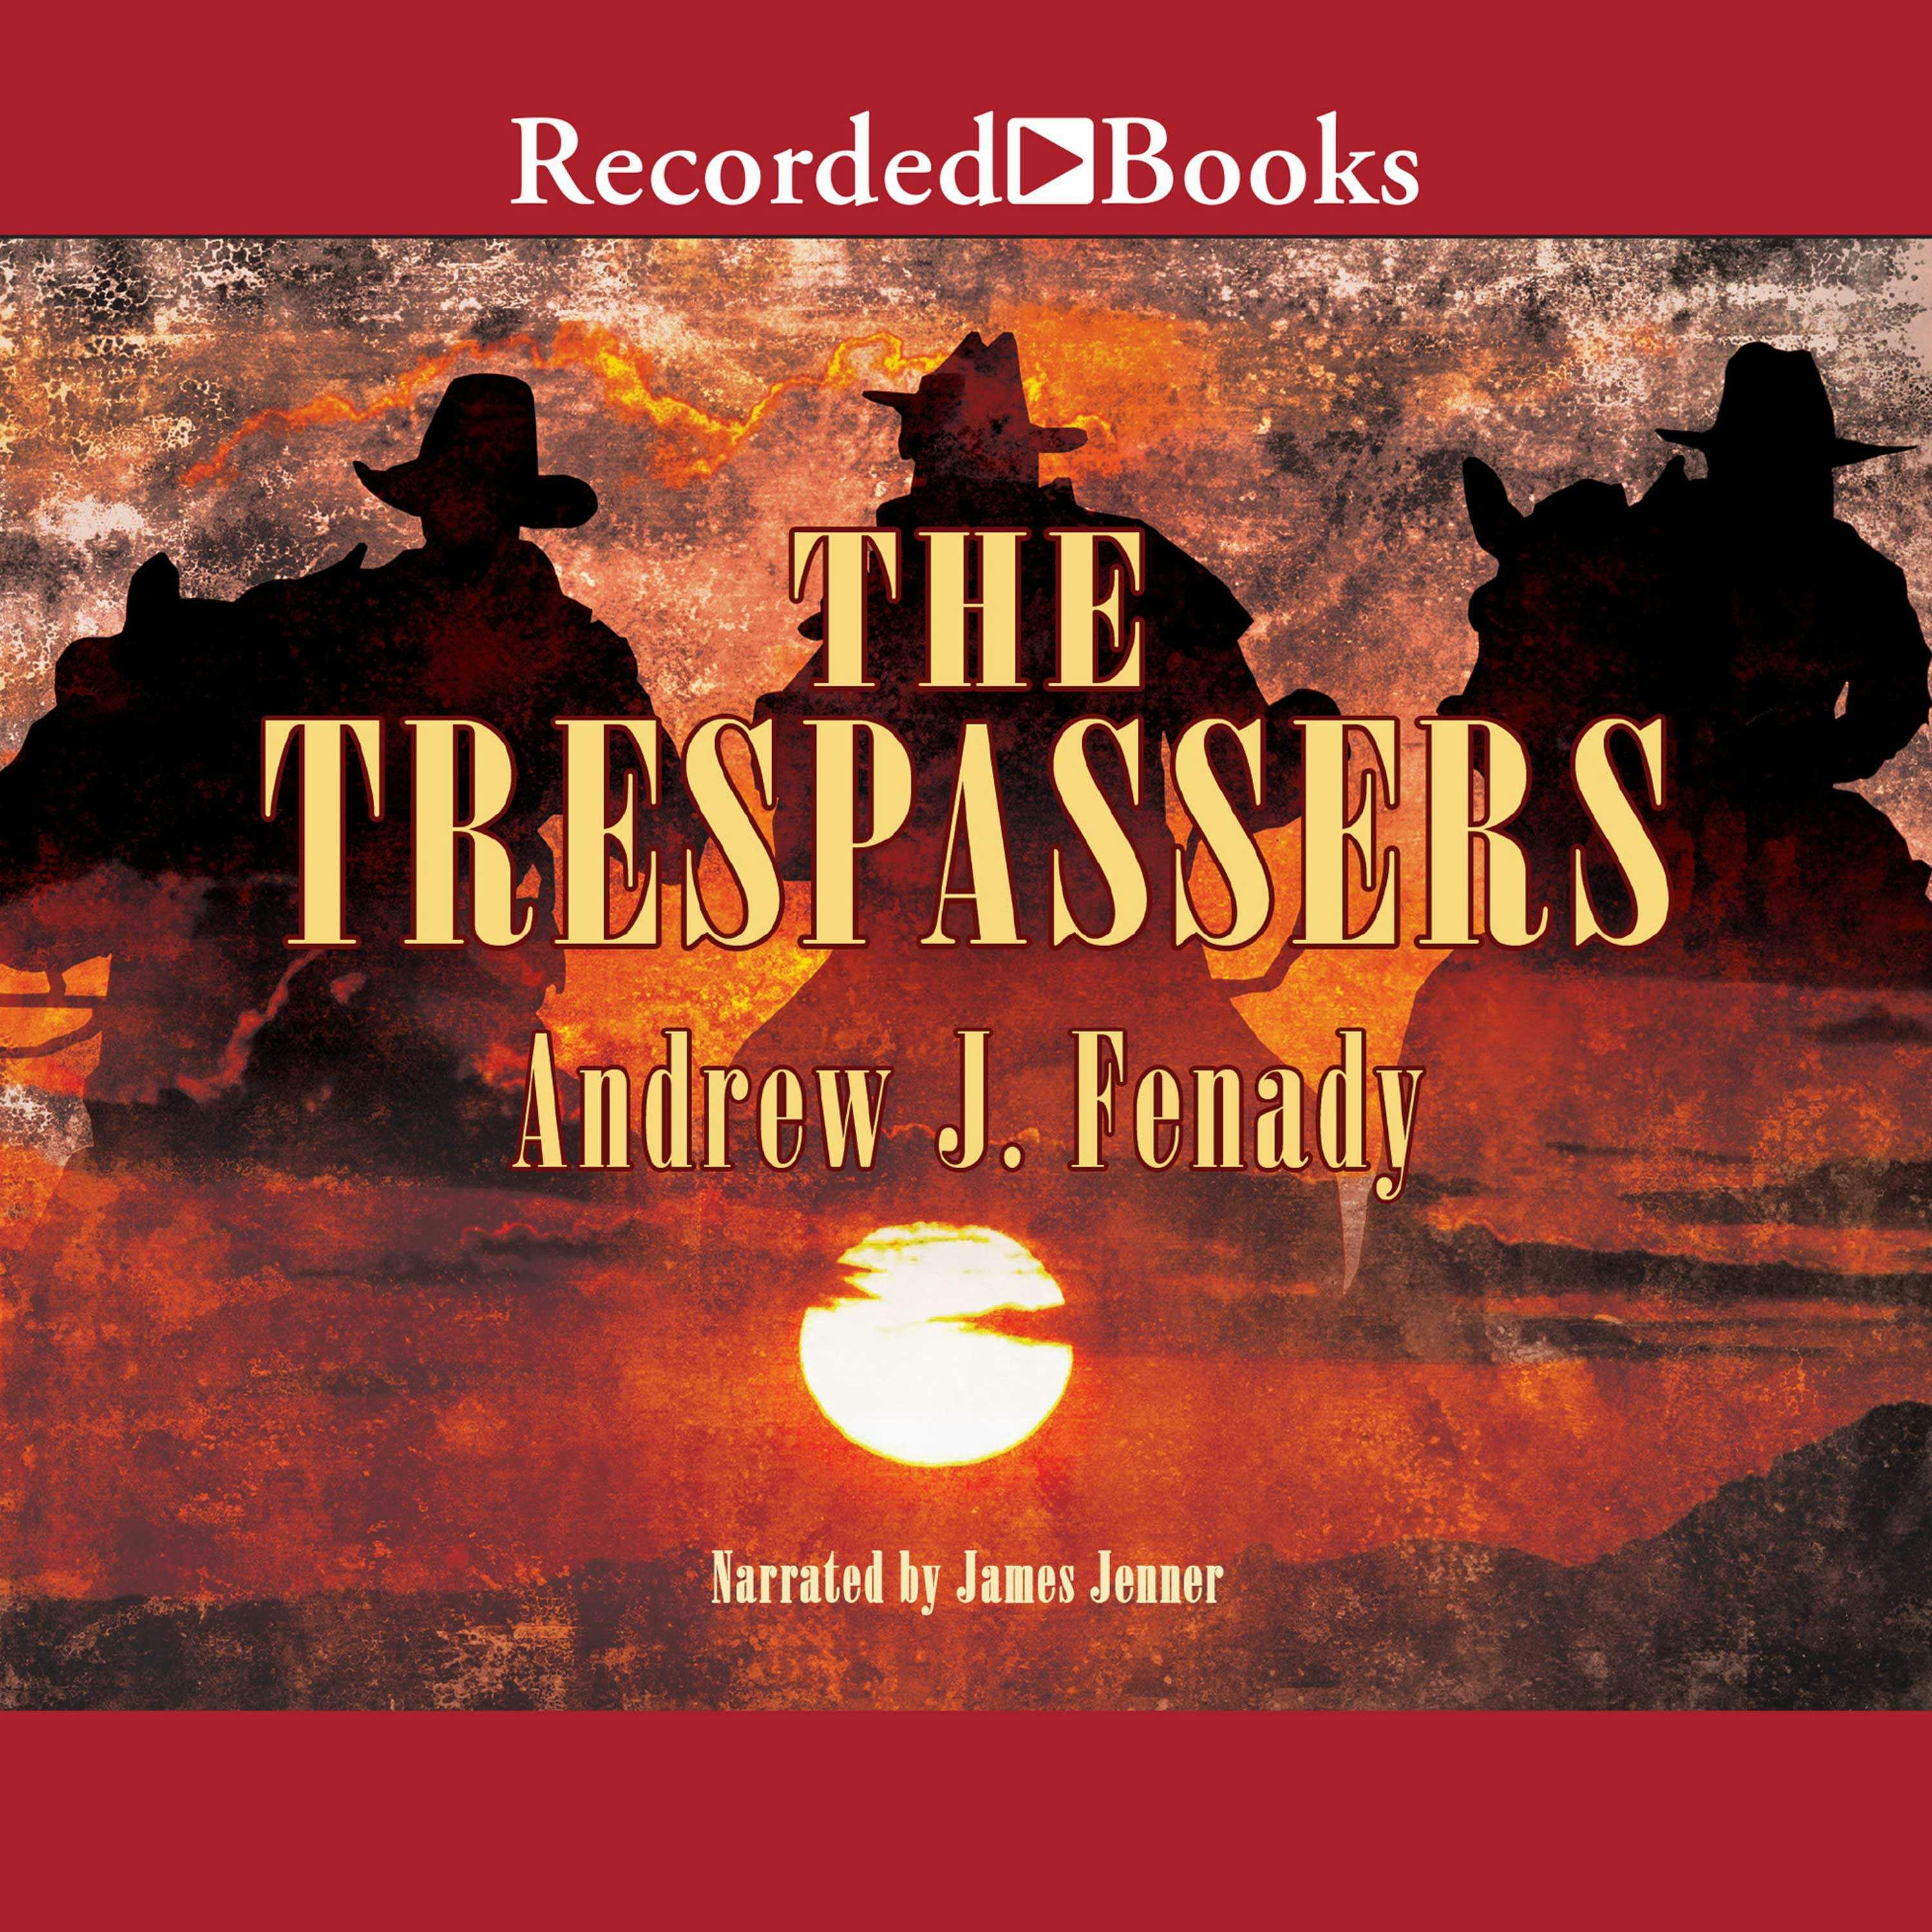 The Trespassers - Andrew Fenady